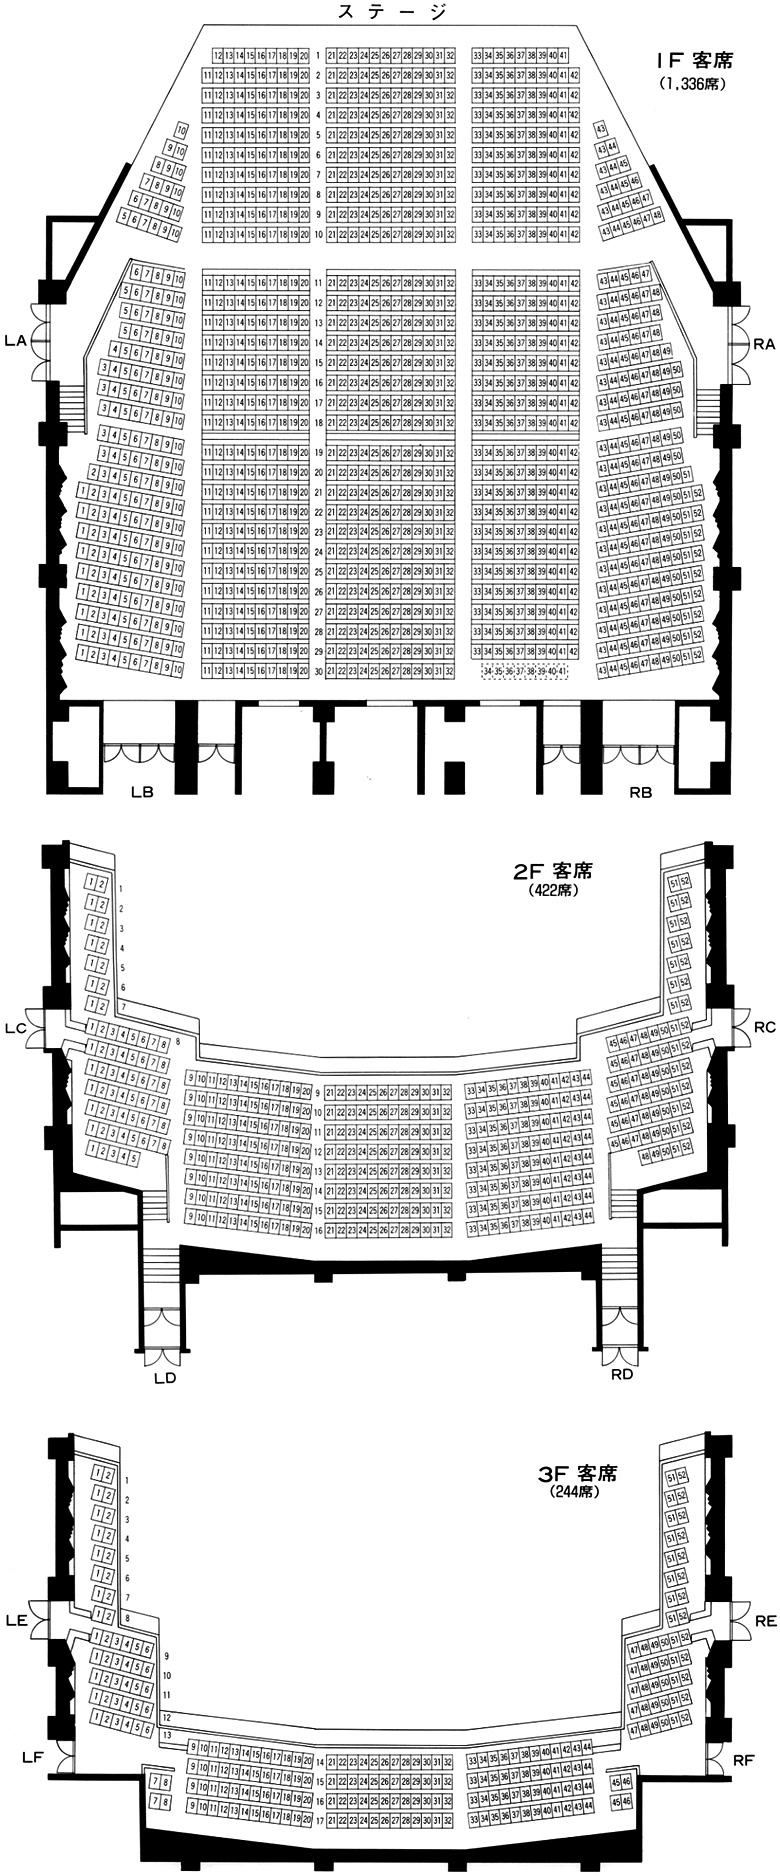 メインホールの座席表・プロセニアム型